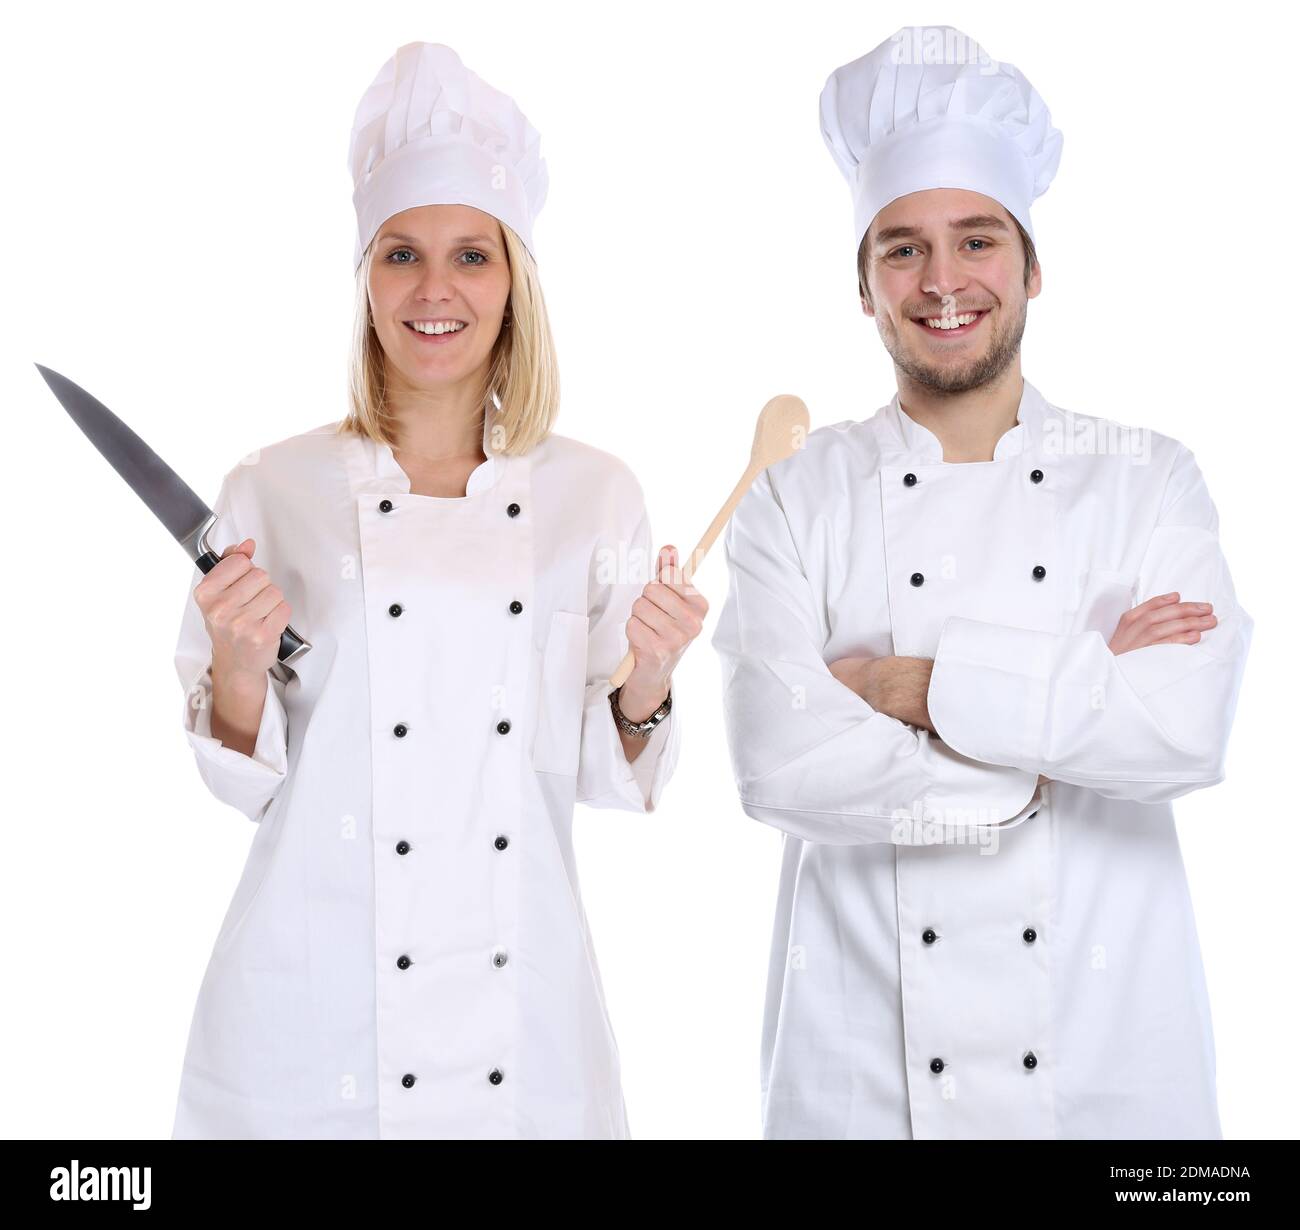 Koch Köche jung Azubi Azubis Ausbildung Auszubildender Messer kochen Beruf Freisteller freigestellt vor einem weissen Hintergrund Stock Photo